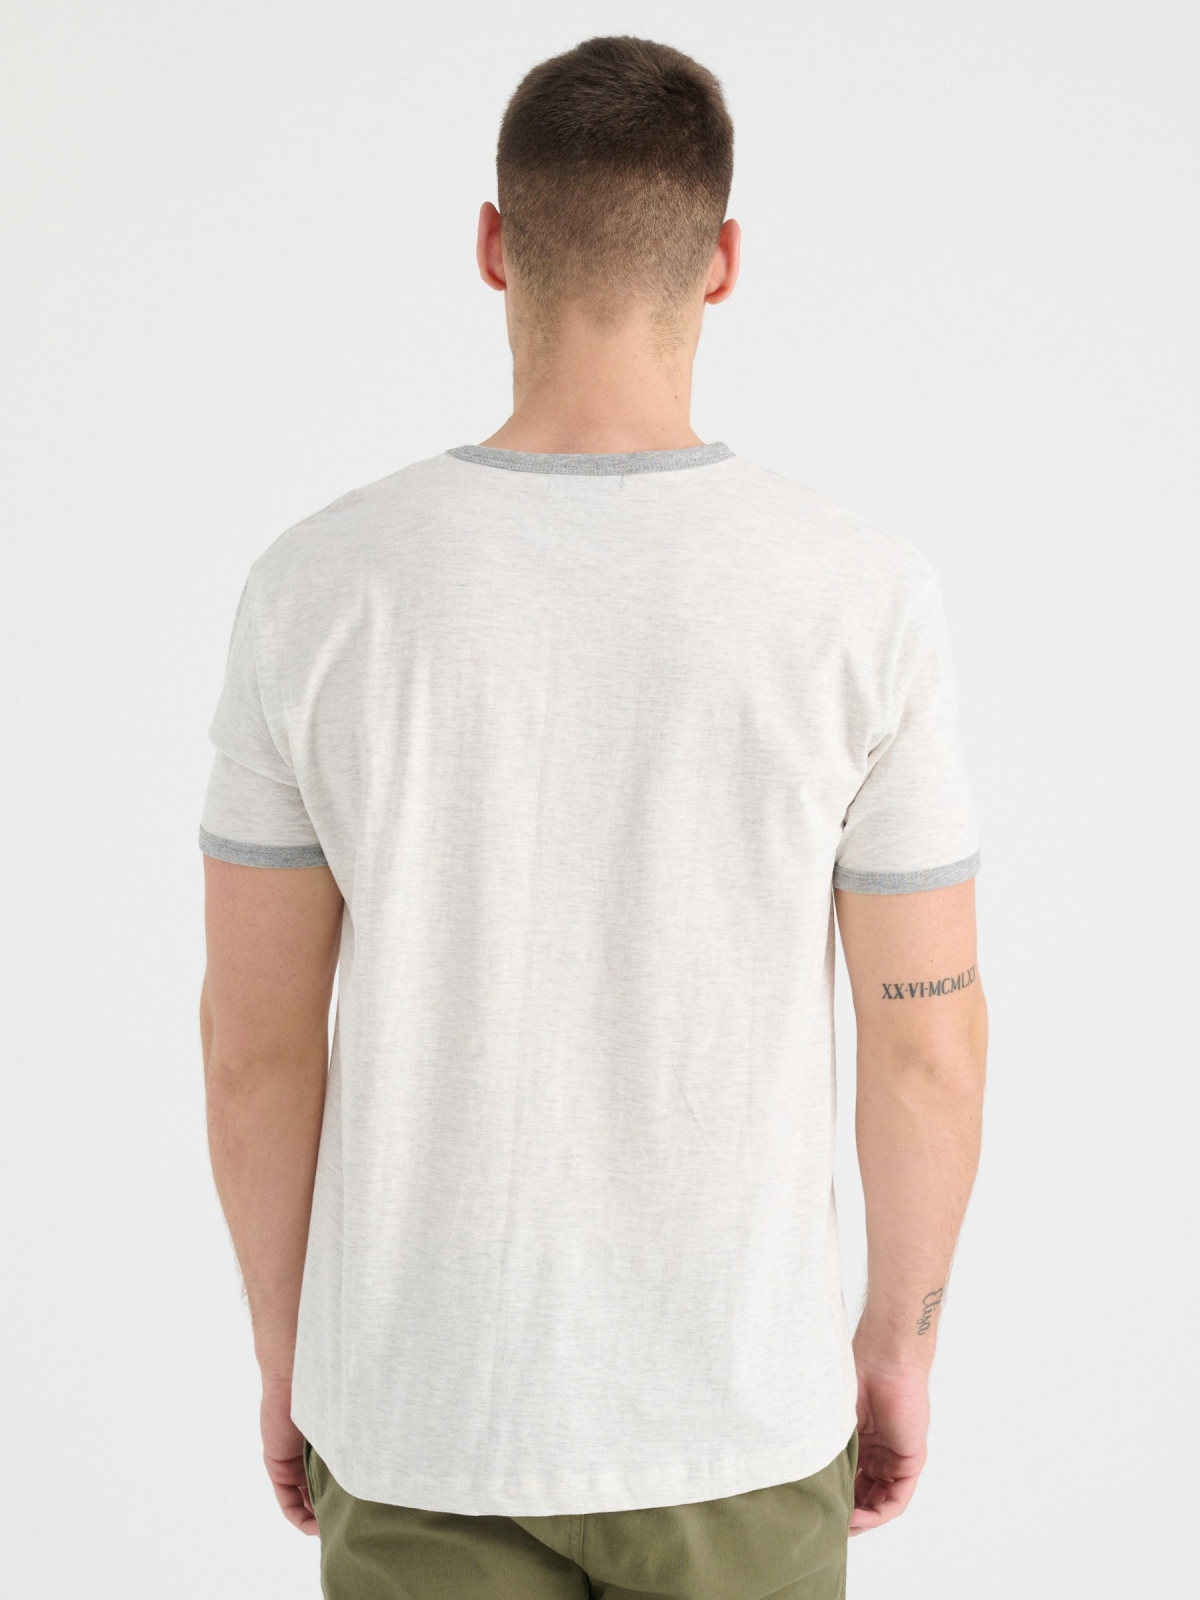 T-shirt básica com contrastes melange claro vista meia traseira